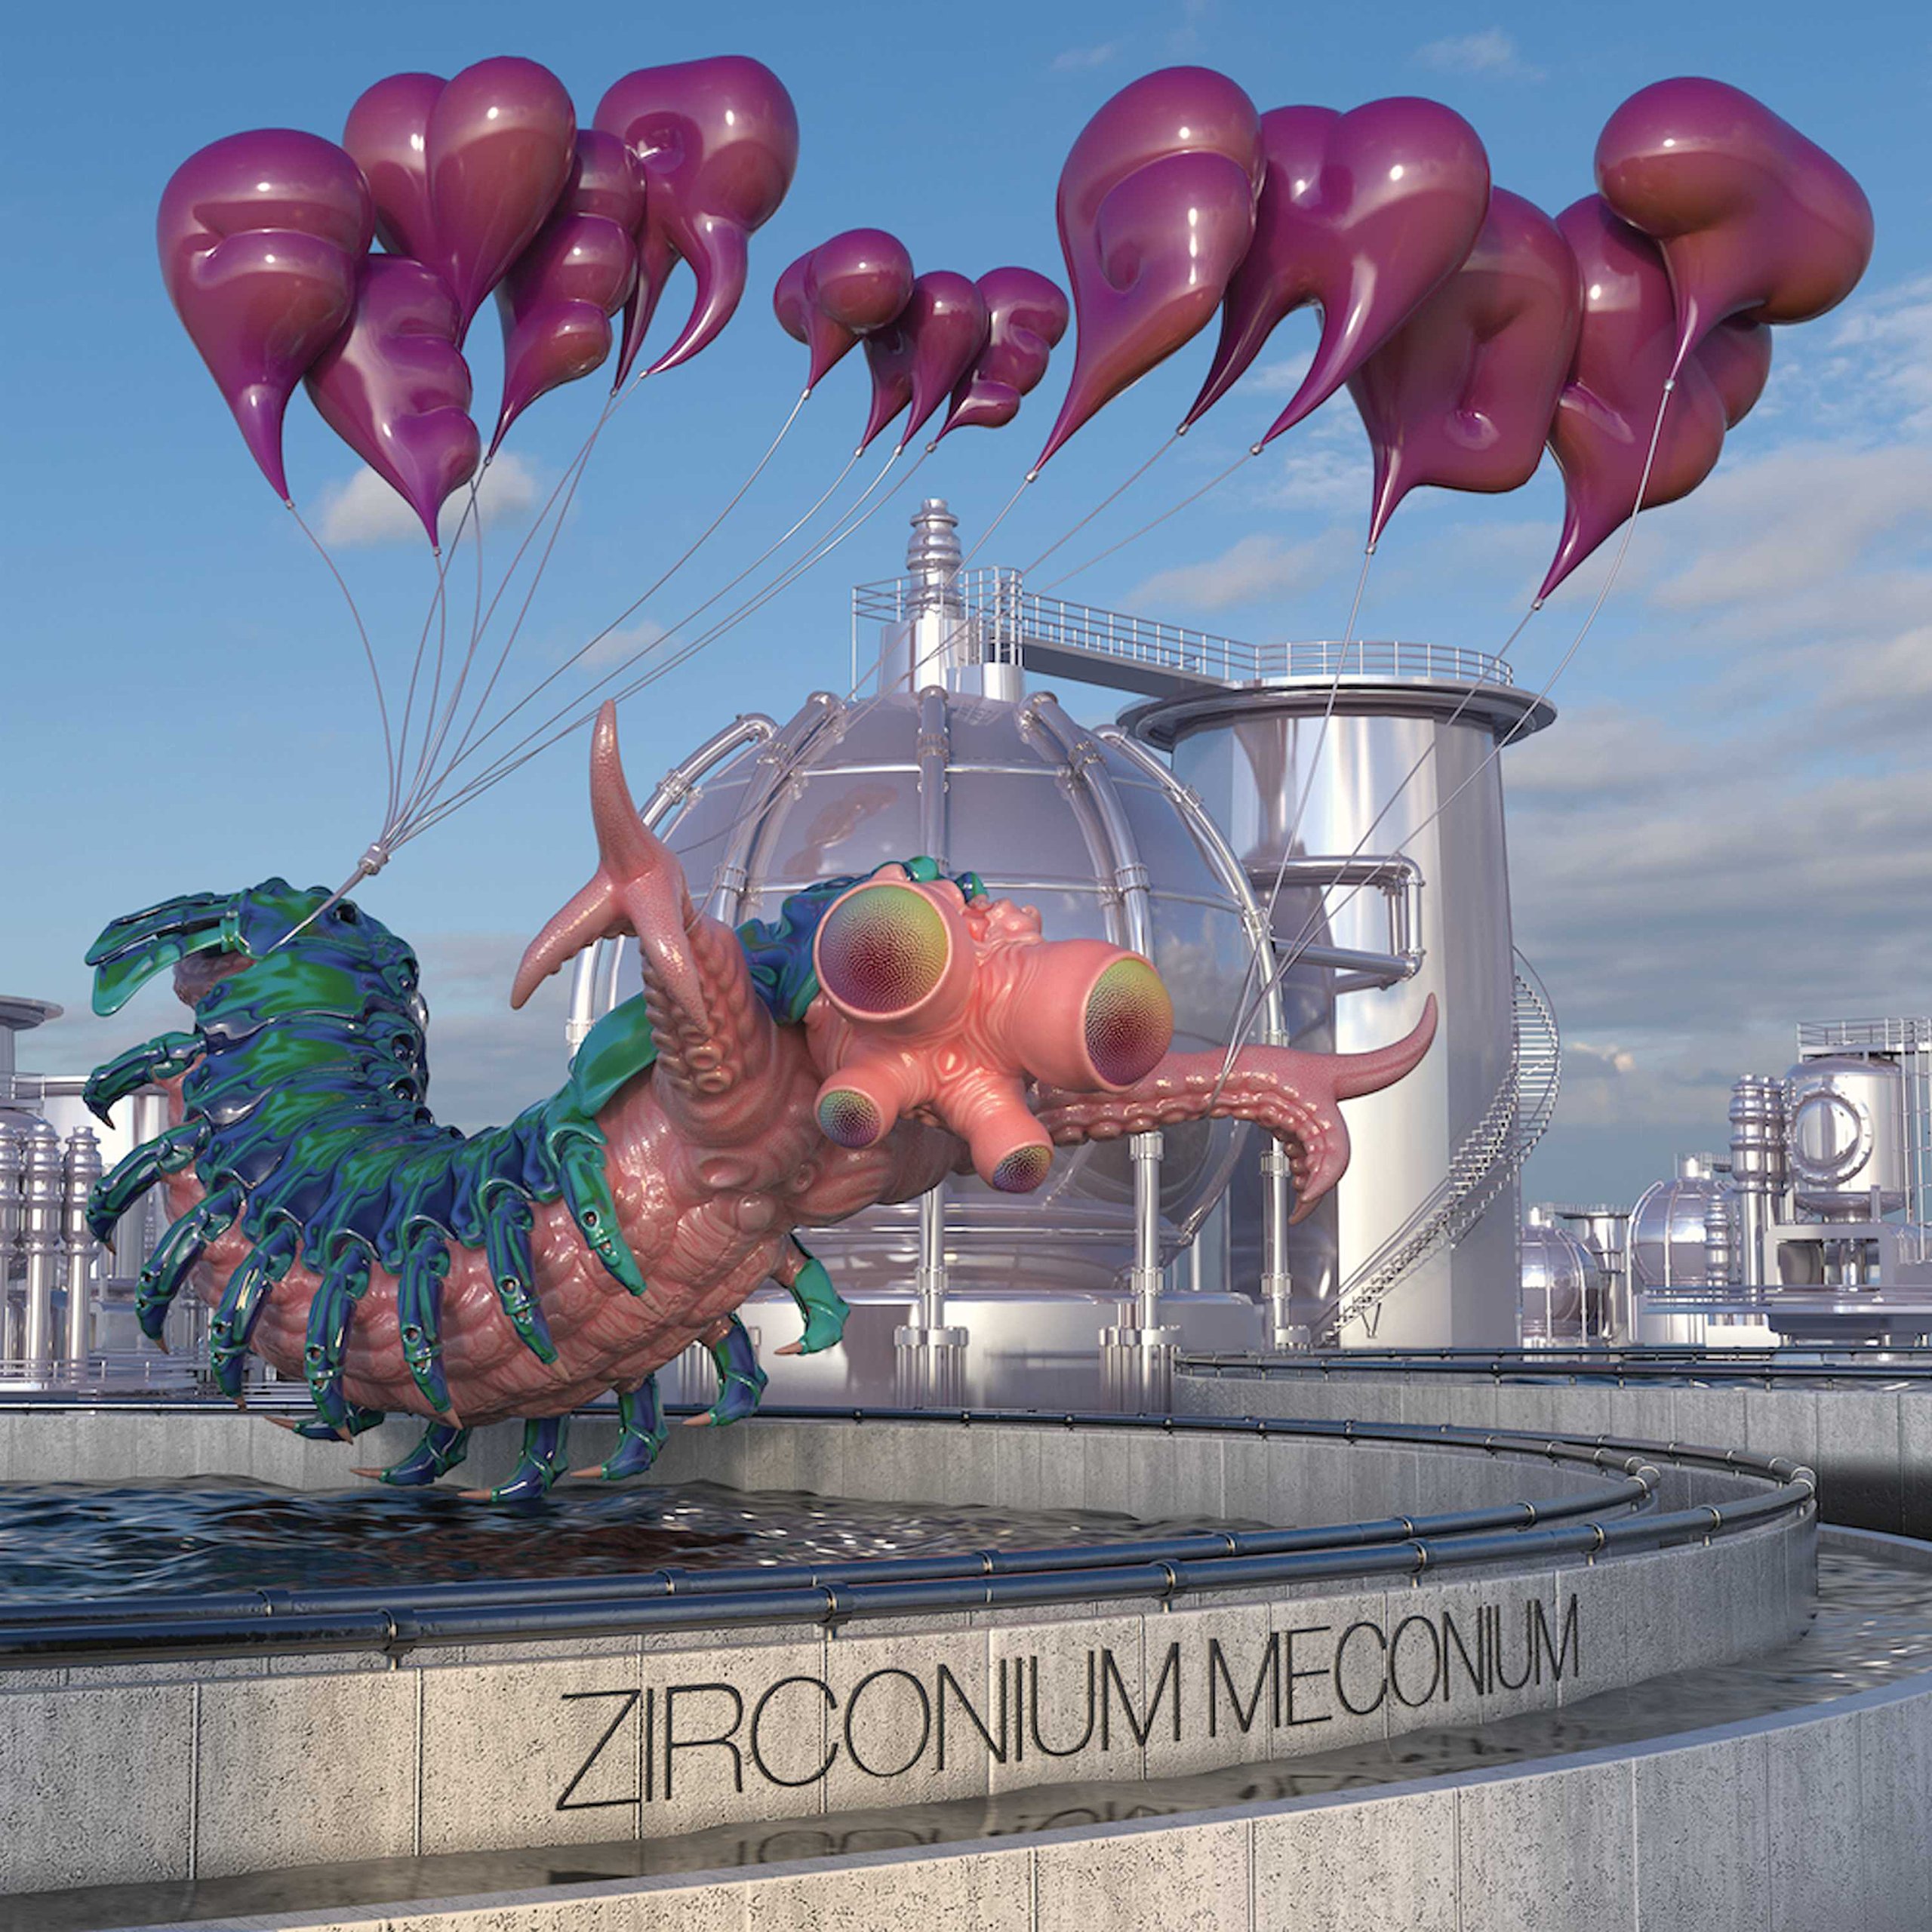 Zirconium Meconium (Vinyl)